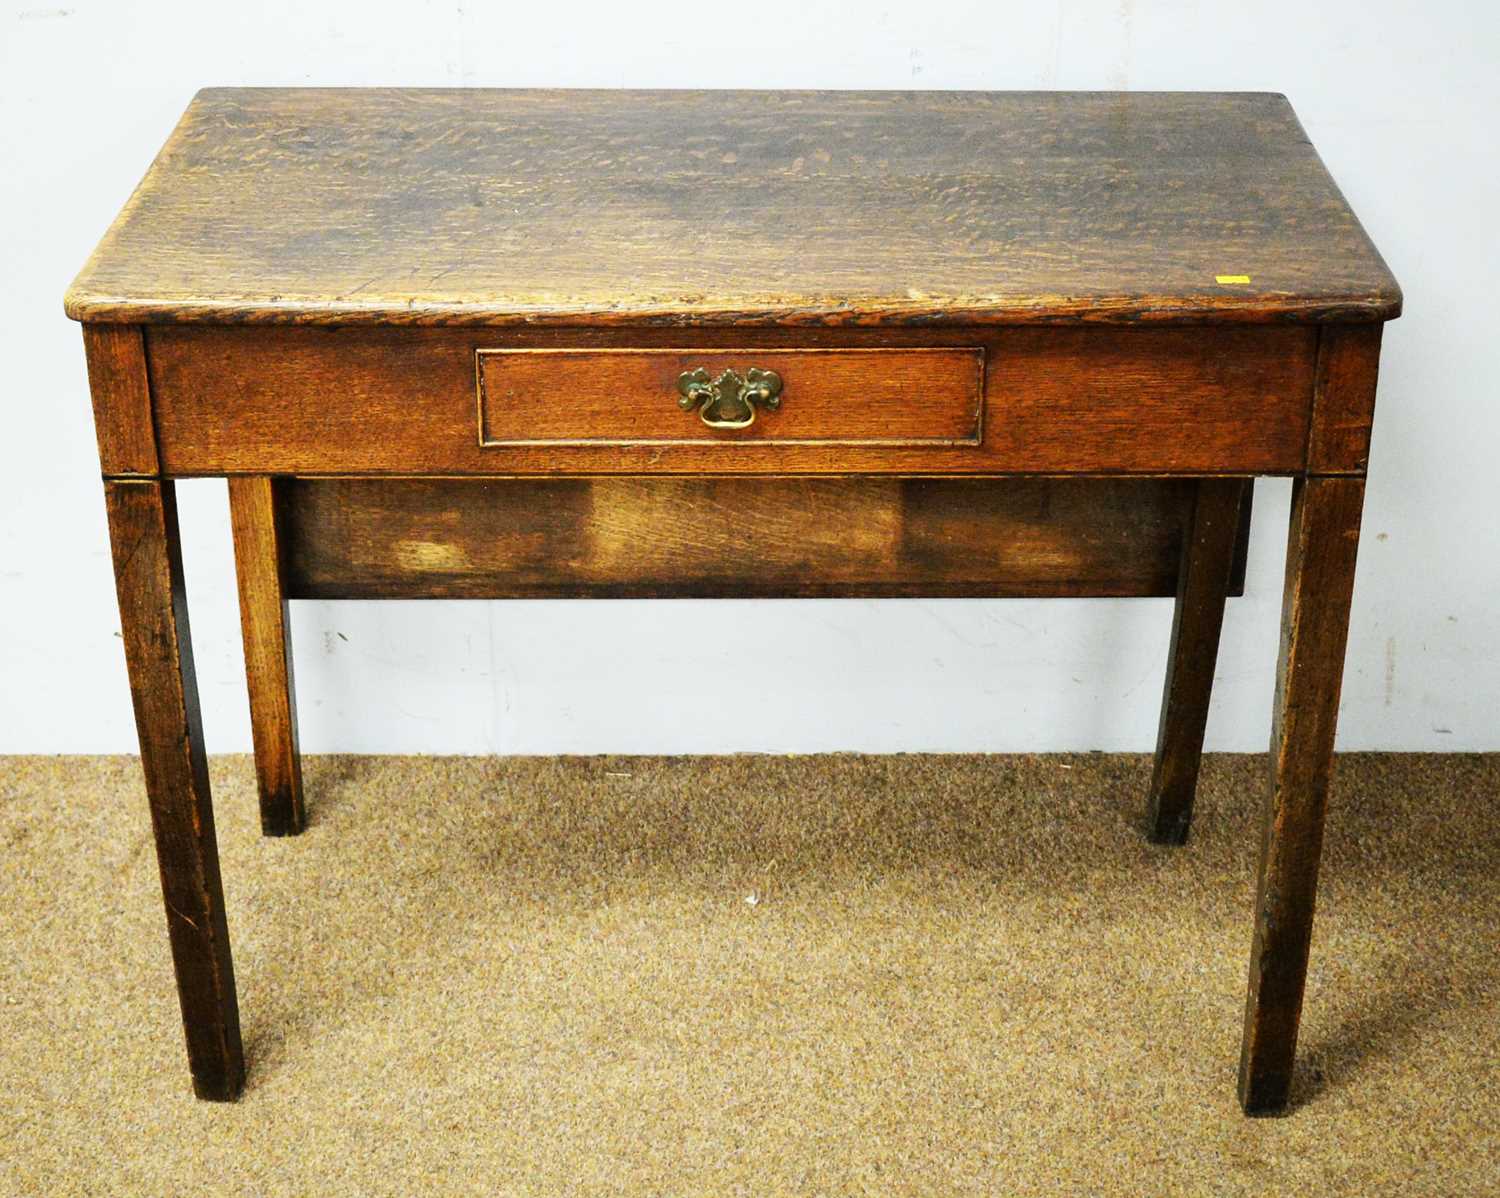 A 19th Century oak side table